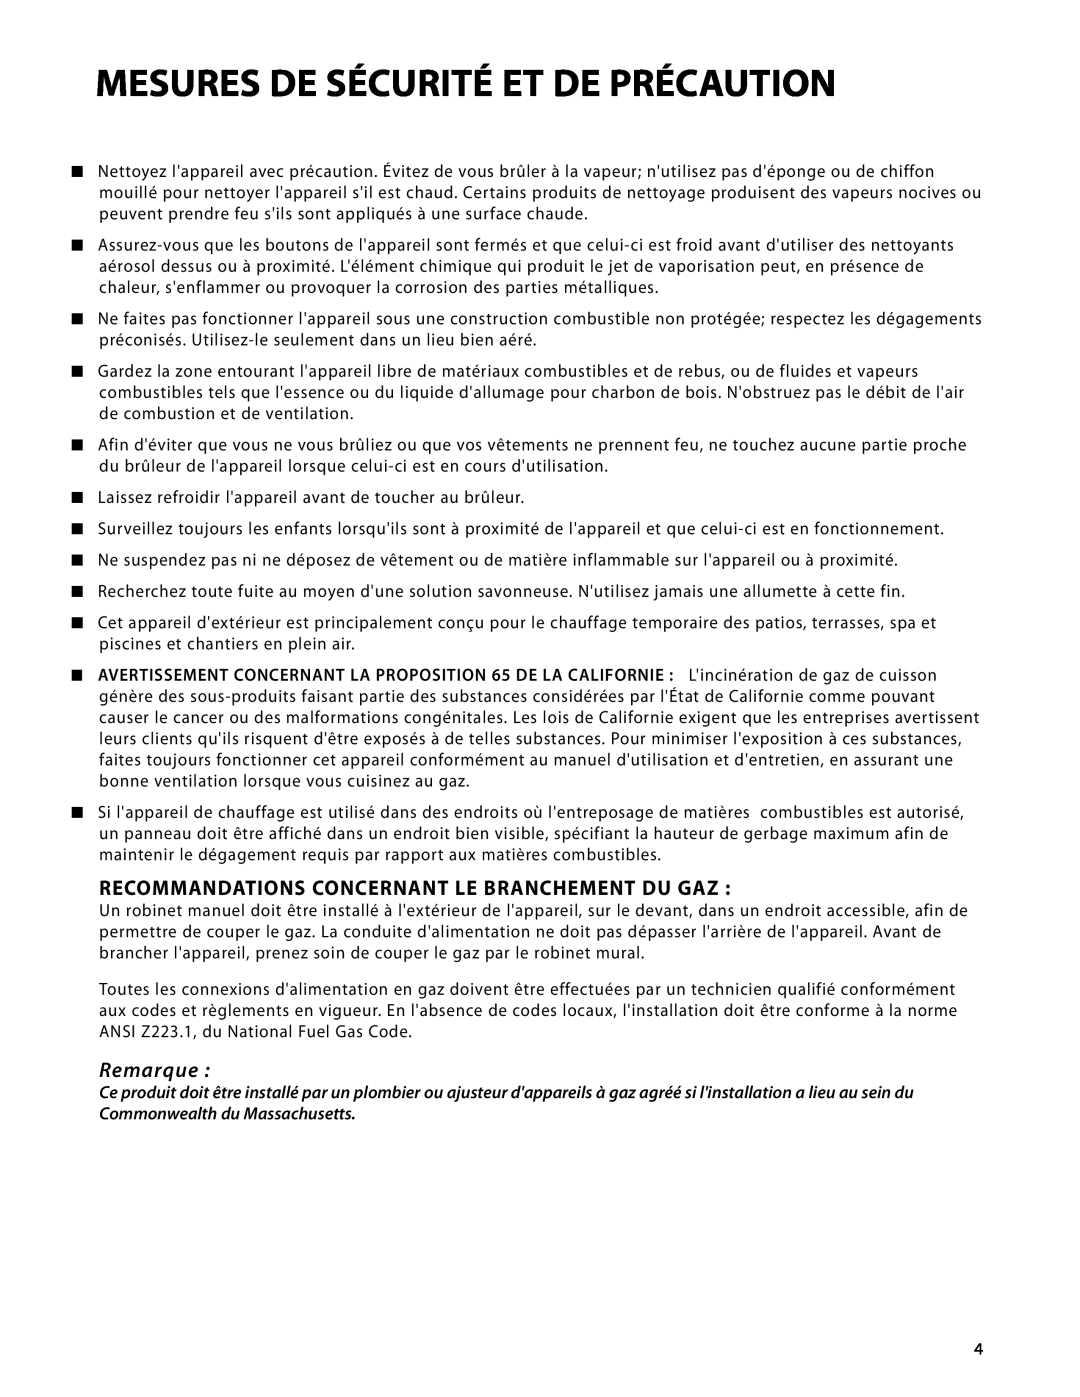 DCS DRH-48N manual Recommandations Concernant Le Branchement Du Gaz, Remarque, Mesures De Sécurité Et De Précaution 